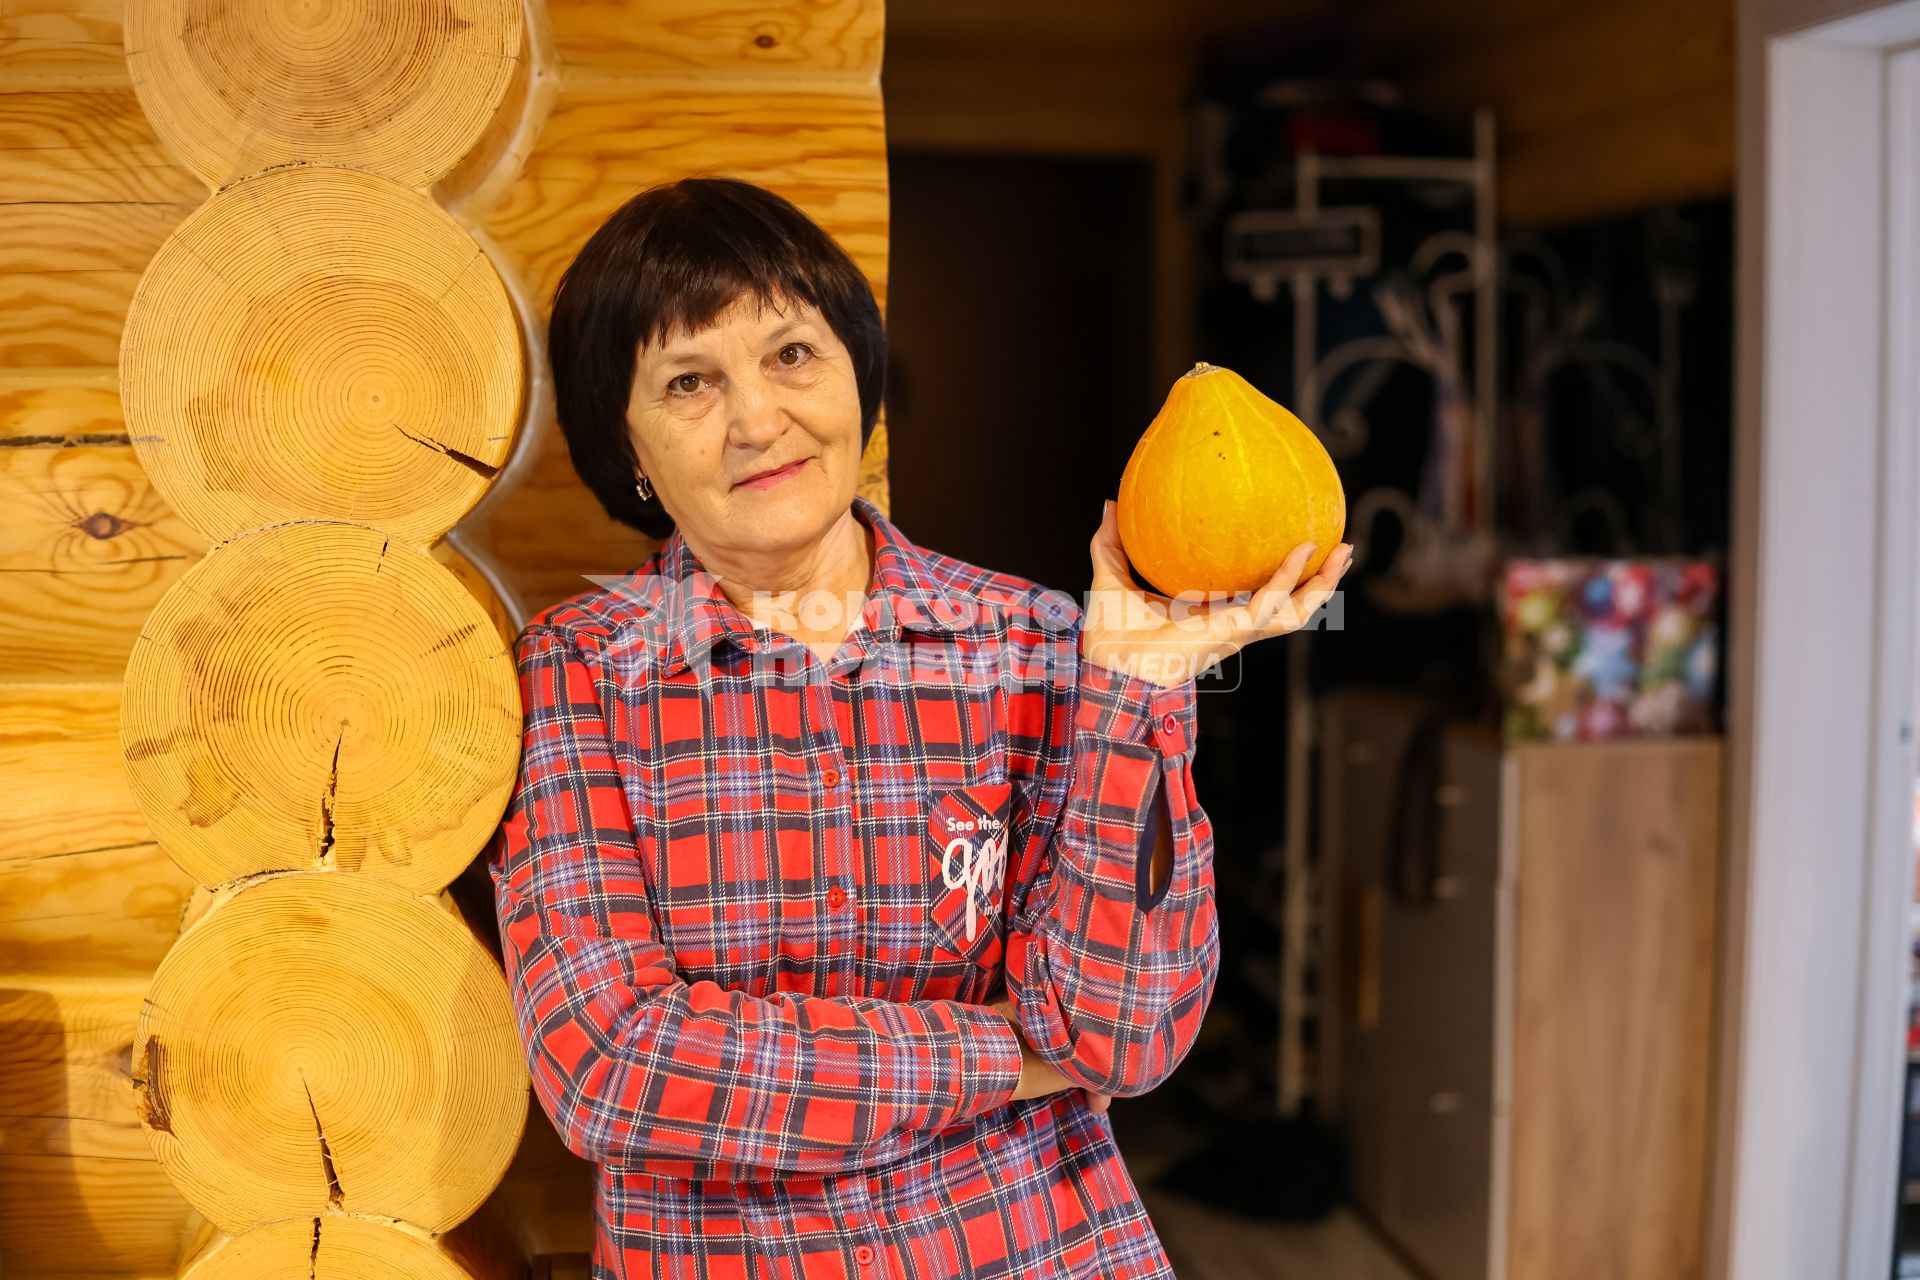 Красноярск. Пожилая женщина показывает тыкву в своем загородном доме.